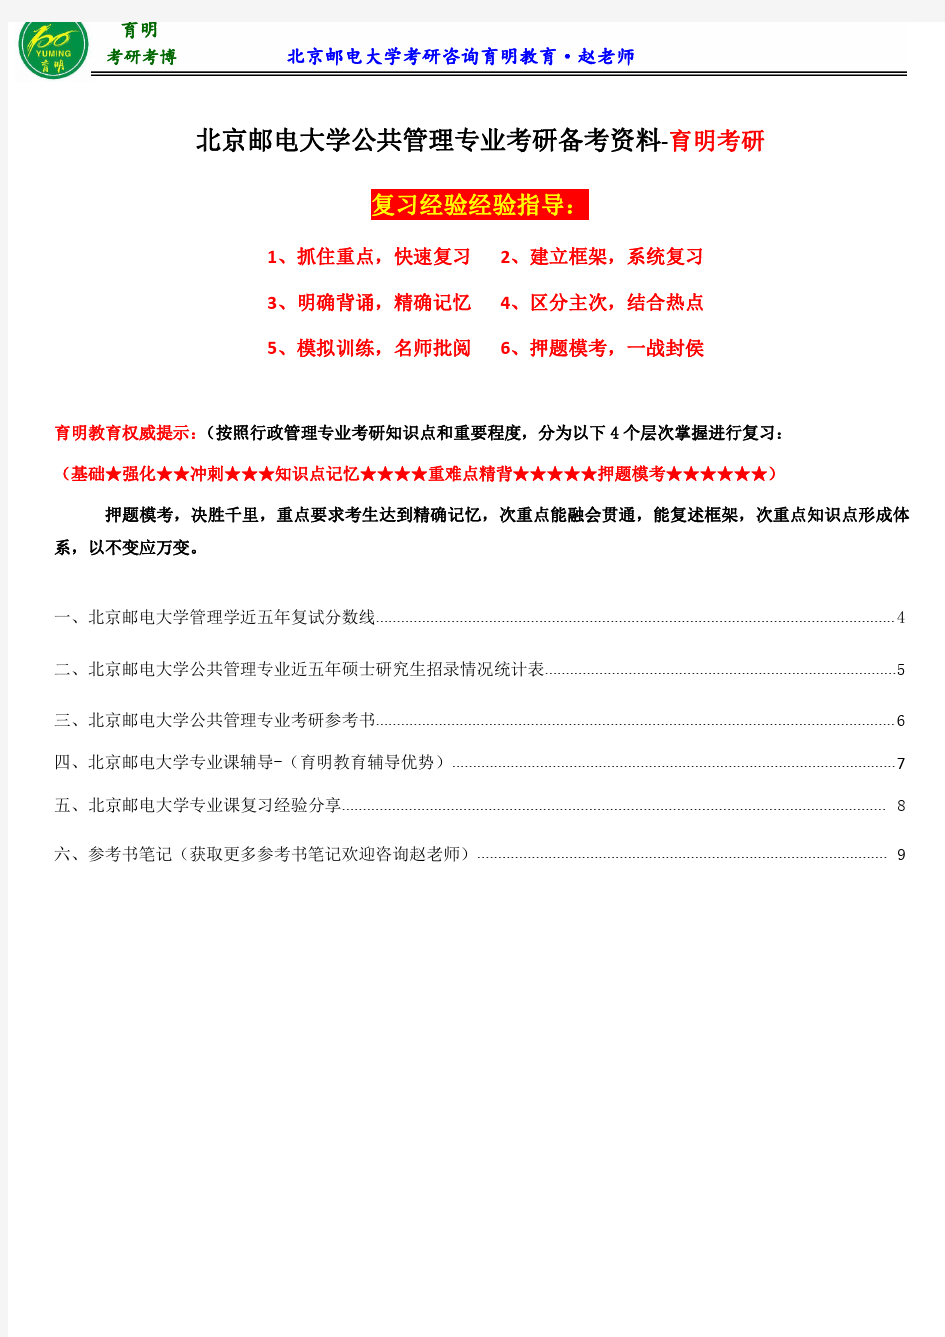 2017北京邮电大学公共管理专业考研参考书、考研分数线、考研辅导